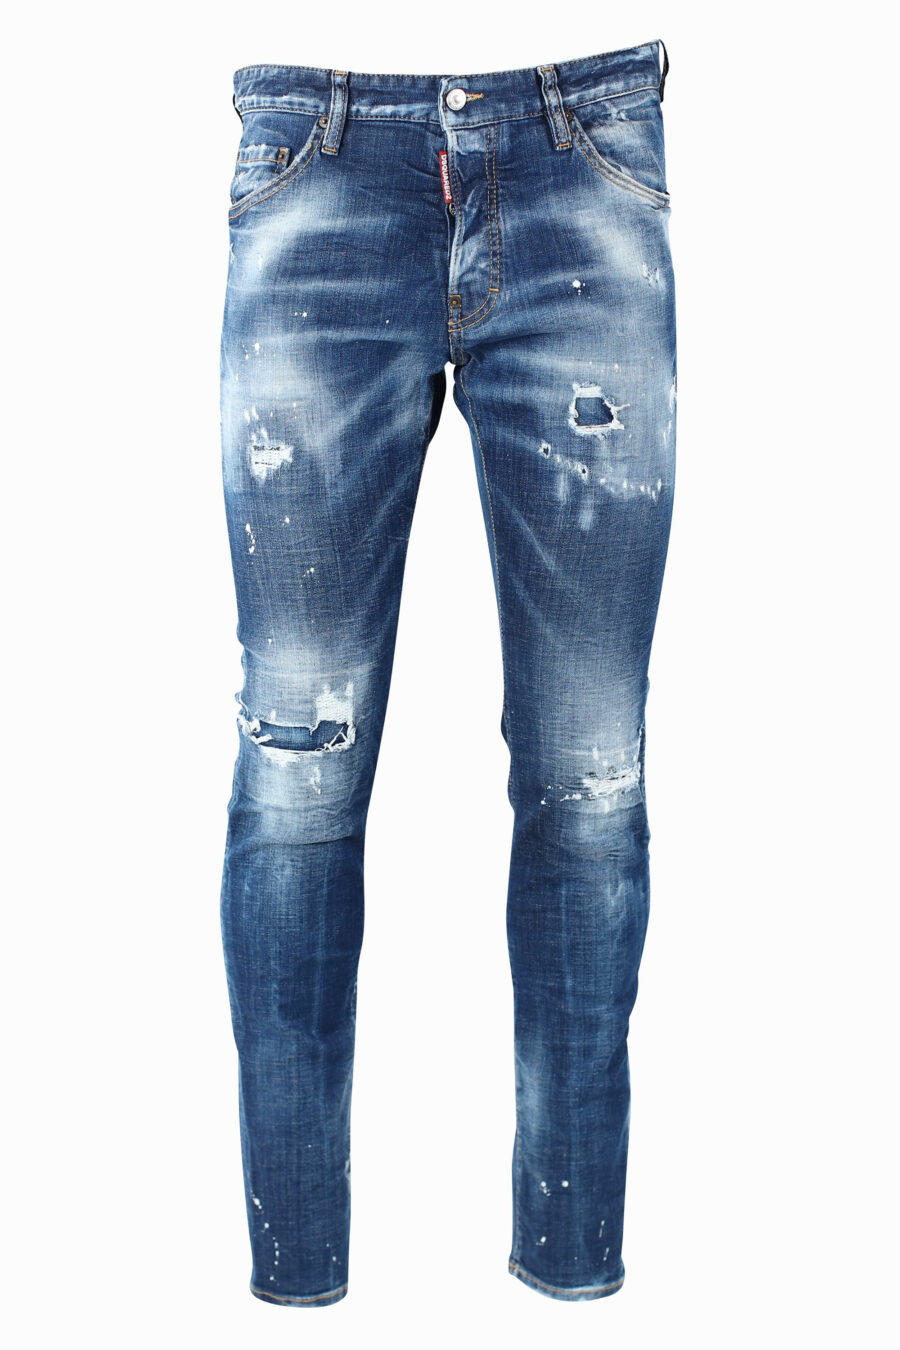 Pantalón vaquero "Cool Guy" azul semidesgastado con rotos - IMG 0987